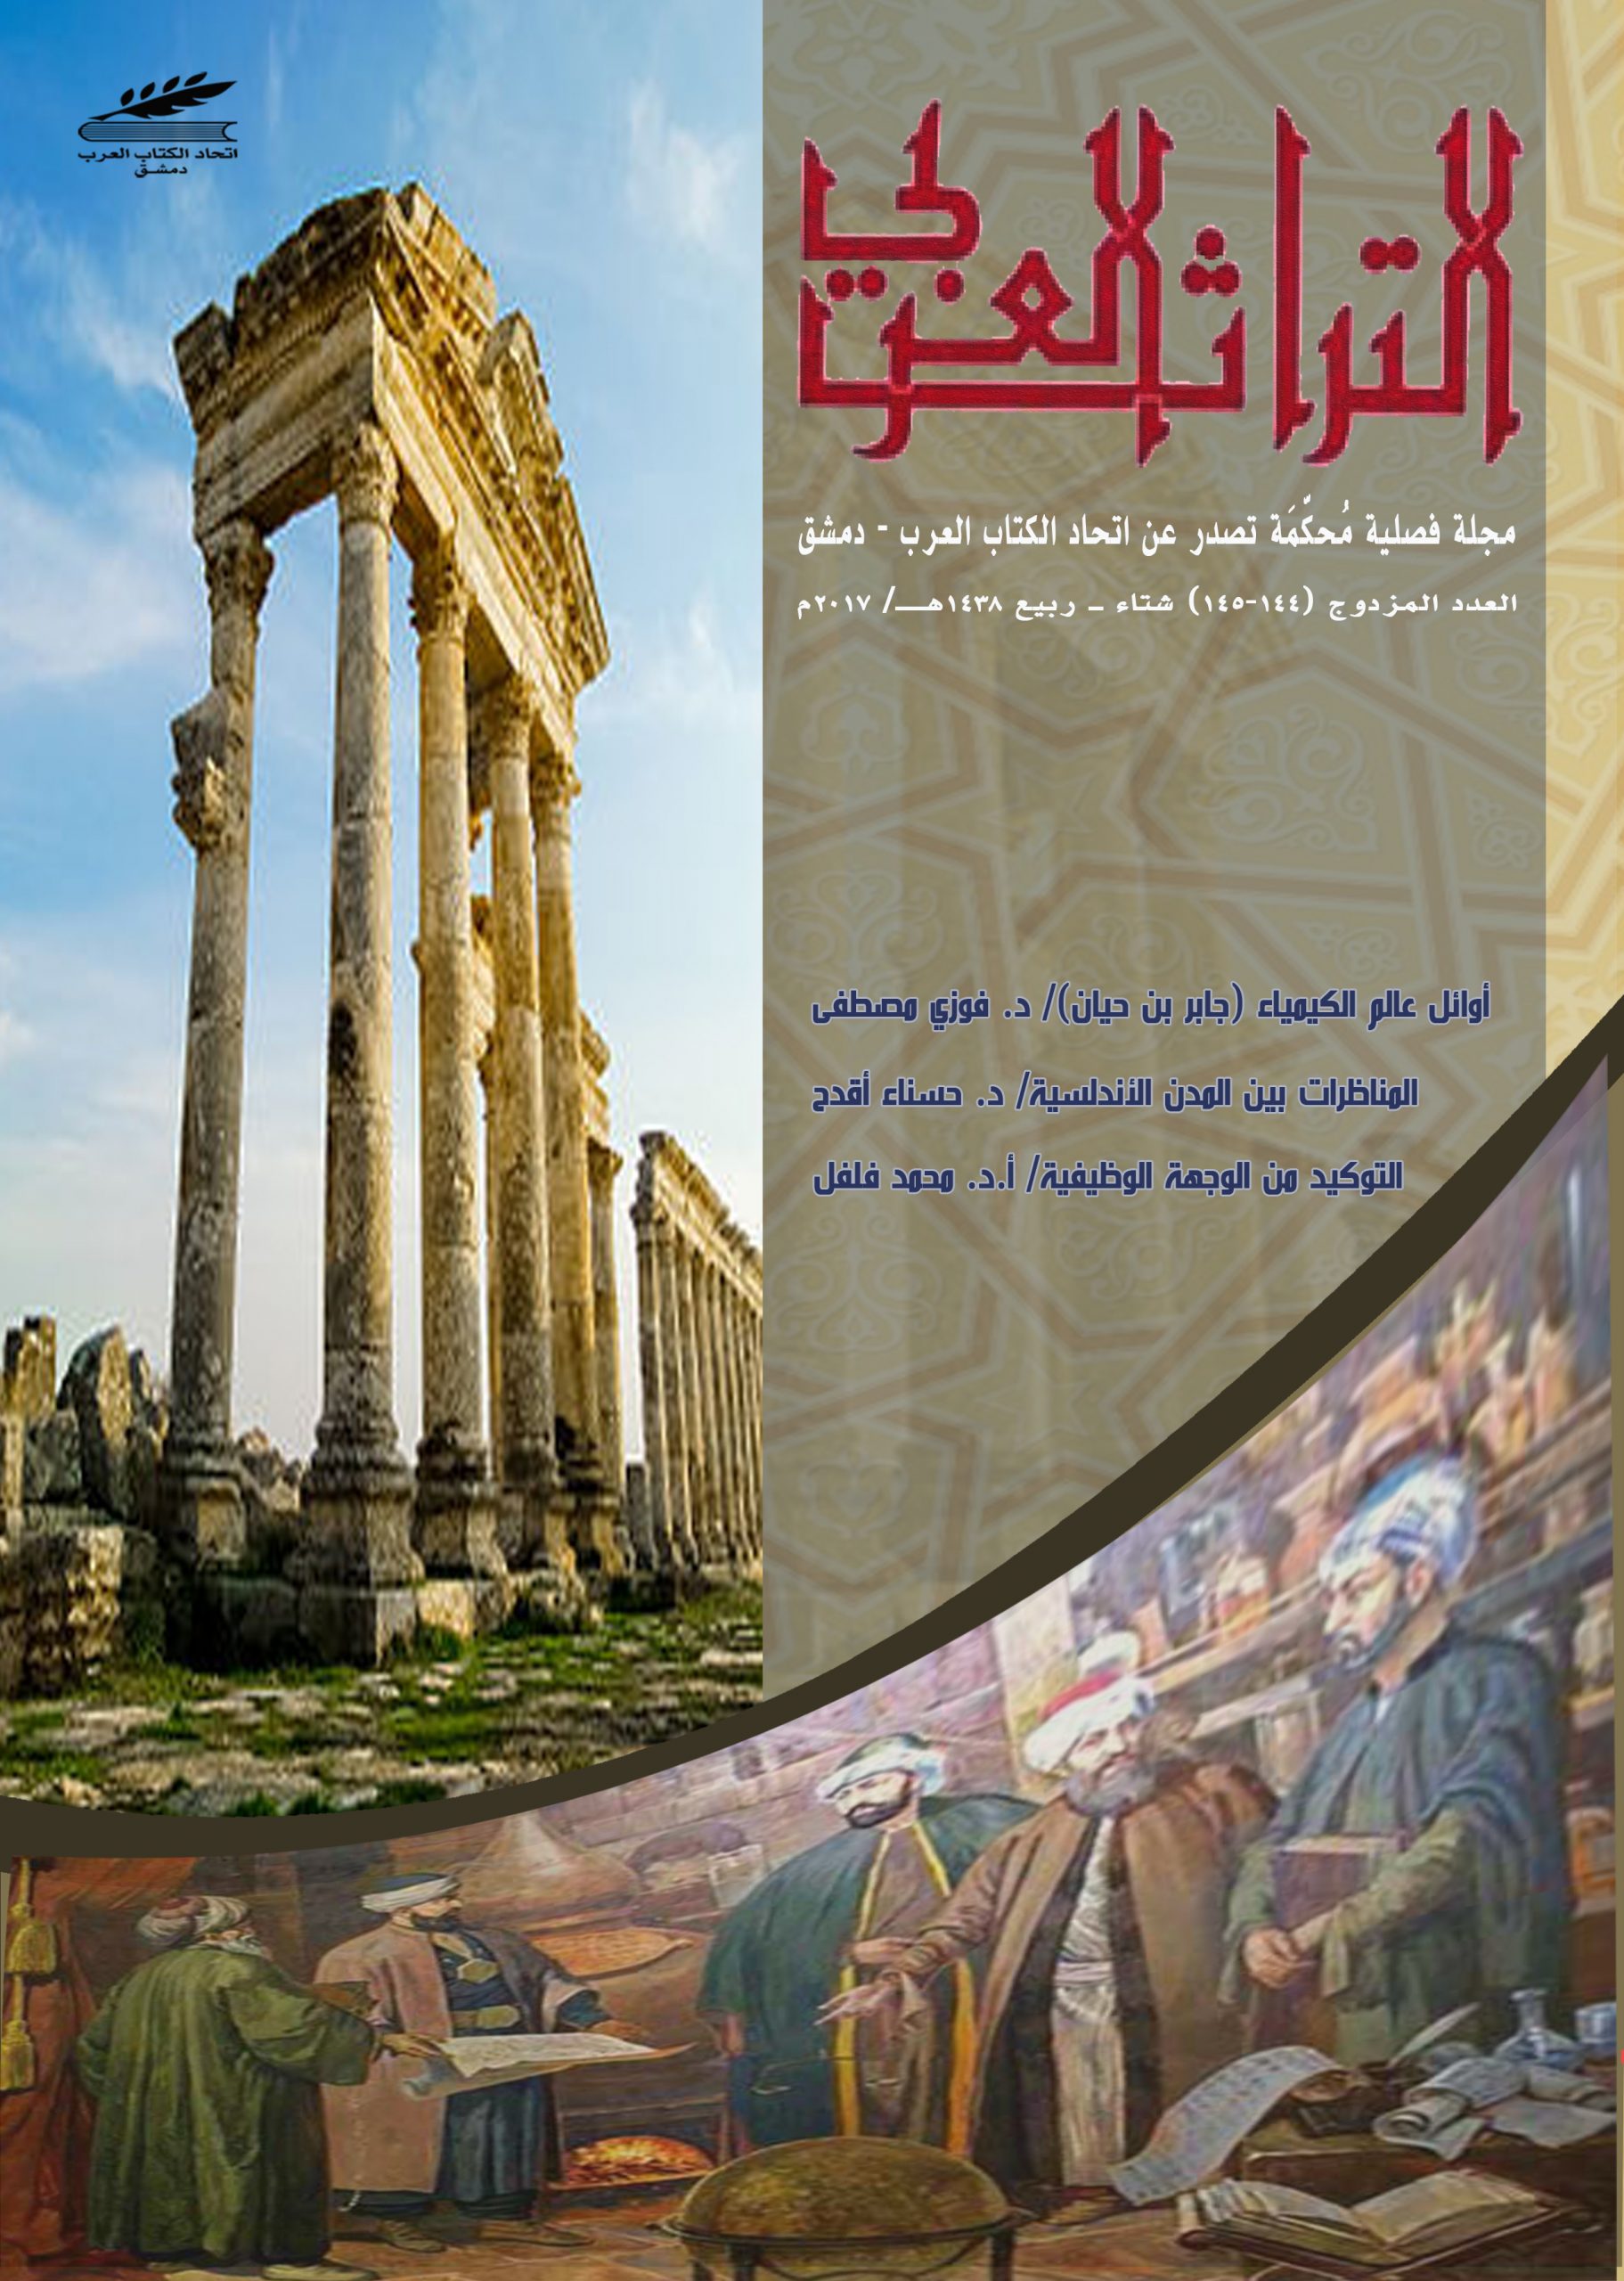 التراث العربي العدد المزدوج 144-145 شتاء وربيع 1438 هـ - 2017 م